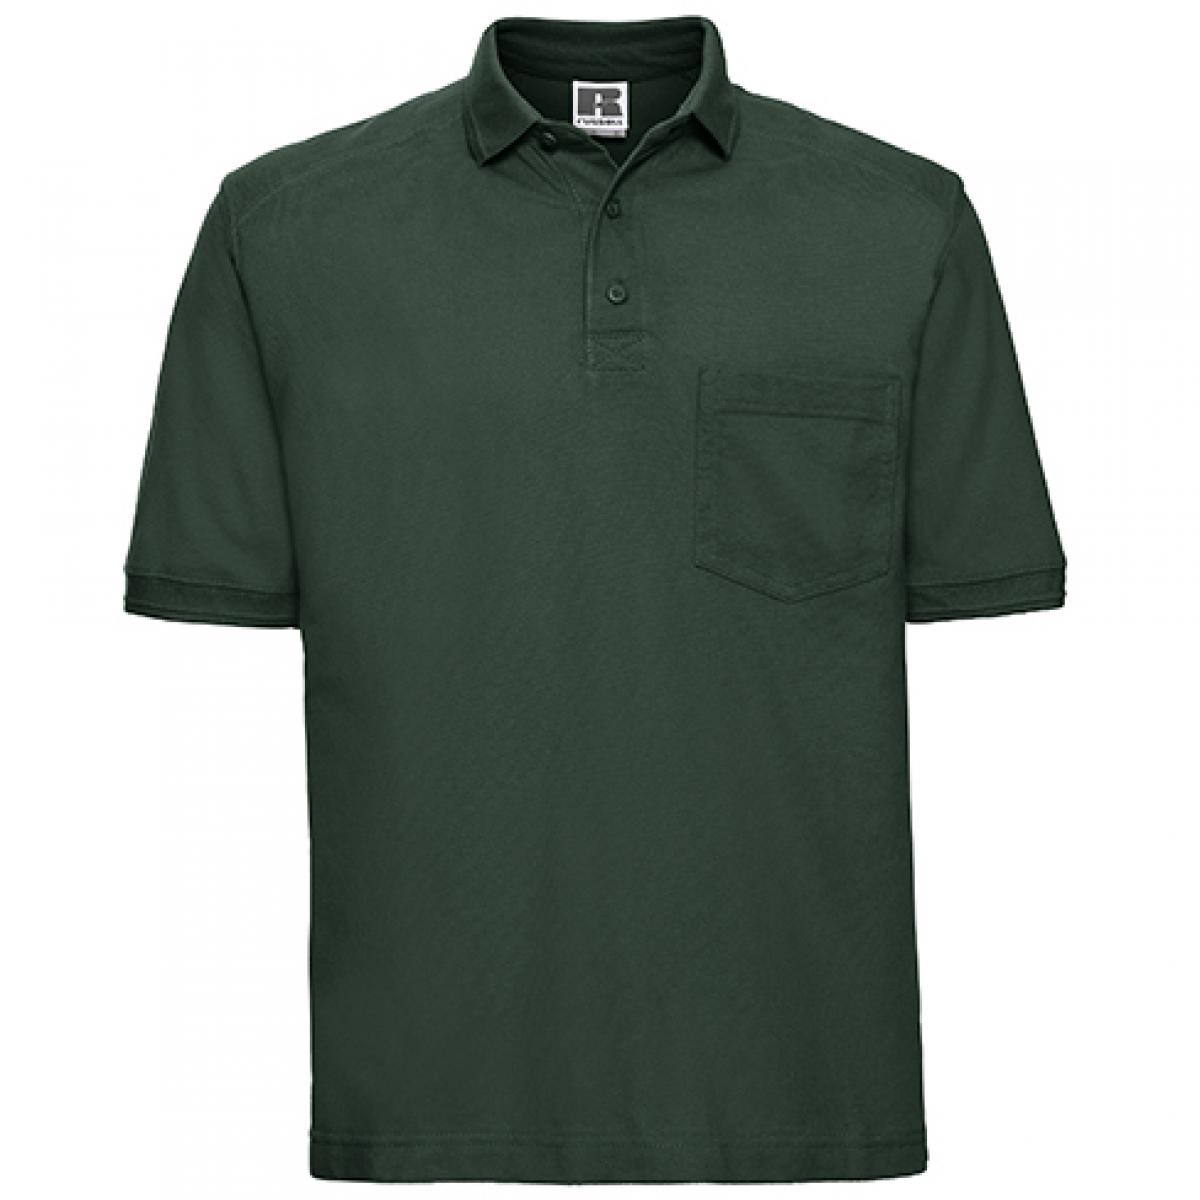 Hersteller: Russell Herstellernummer: R-011M-0 Artikelbezeichnung: Herren Workwear-Poloshirt - Waschbar bis 60 °C Farbe: Bottle Green